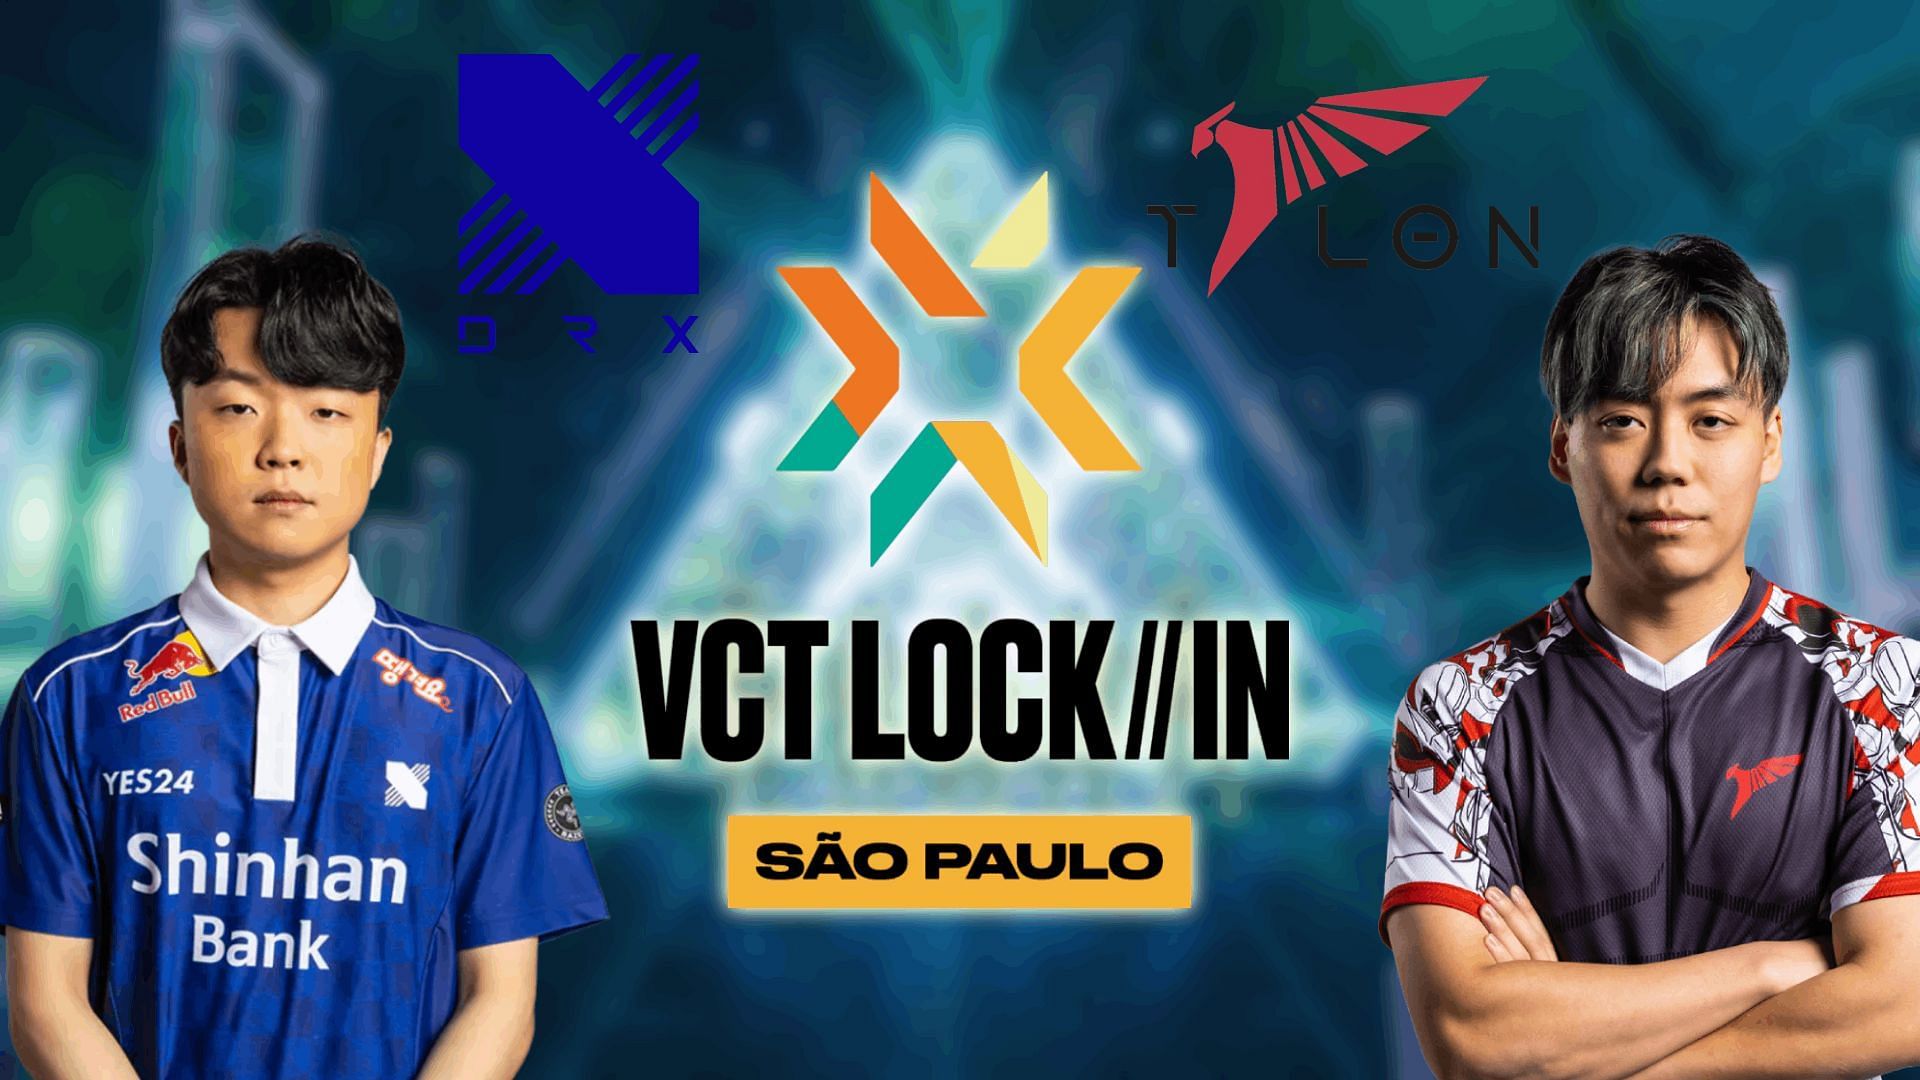 DRX vs Talon at VCT LOCK//IN 2023 (Image via Sportskeeda)